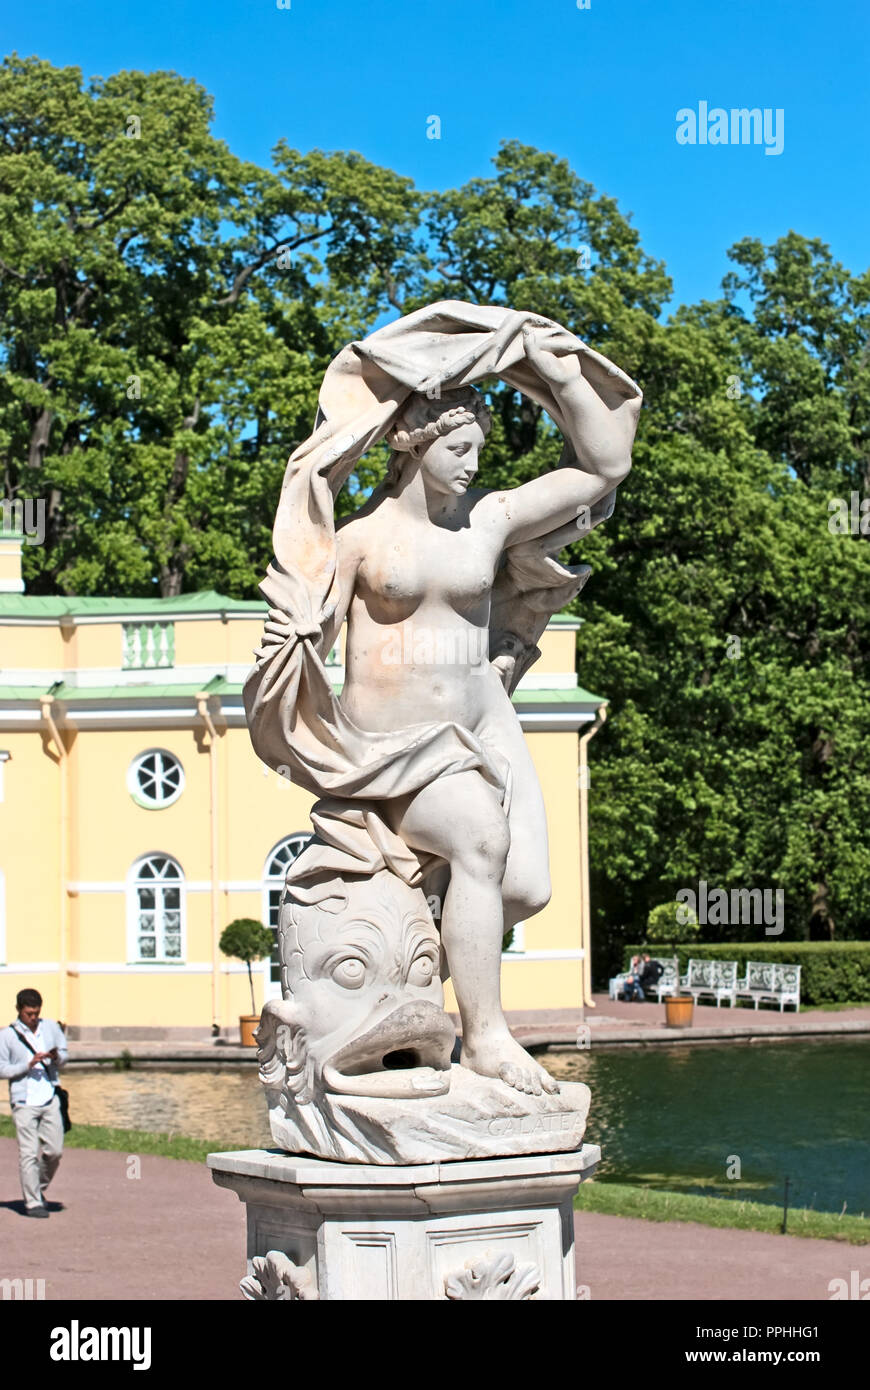 Carskoe Selo, San Pietroburgo, Russia - 7 giugno 2015: Il Galatea scultura in Catherine Park. Sullo sfondo è superiore Bathhouse Pavilion. Foto Stock